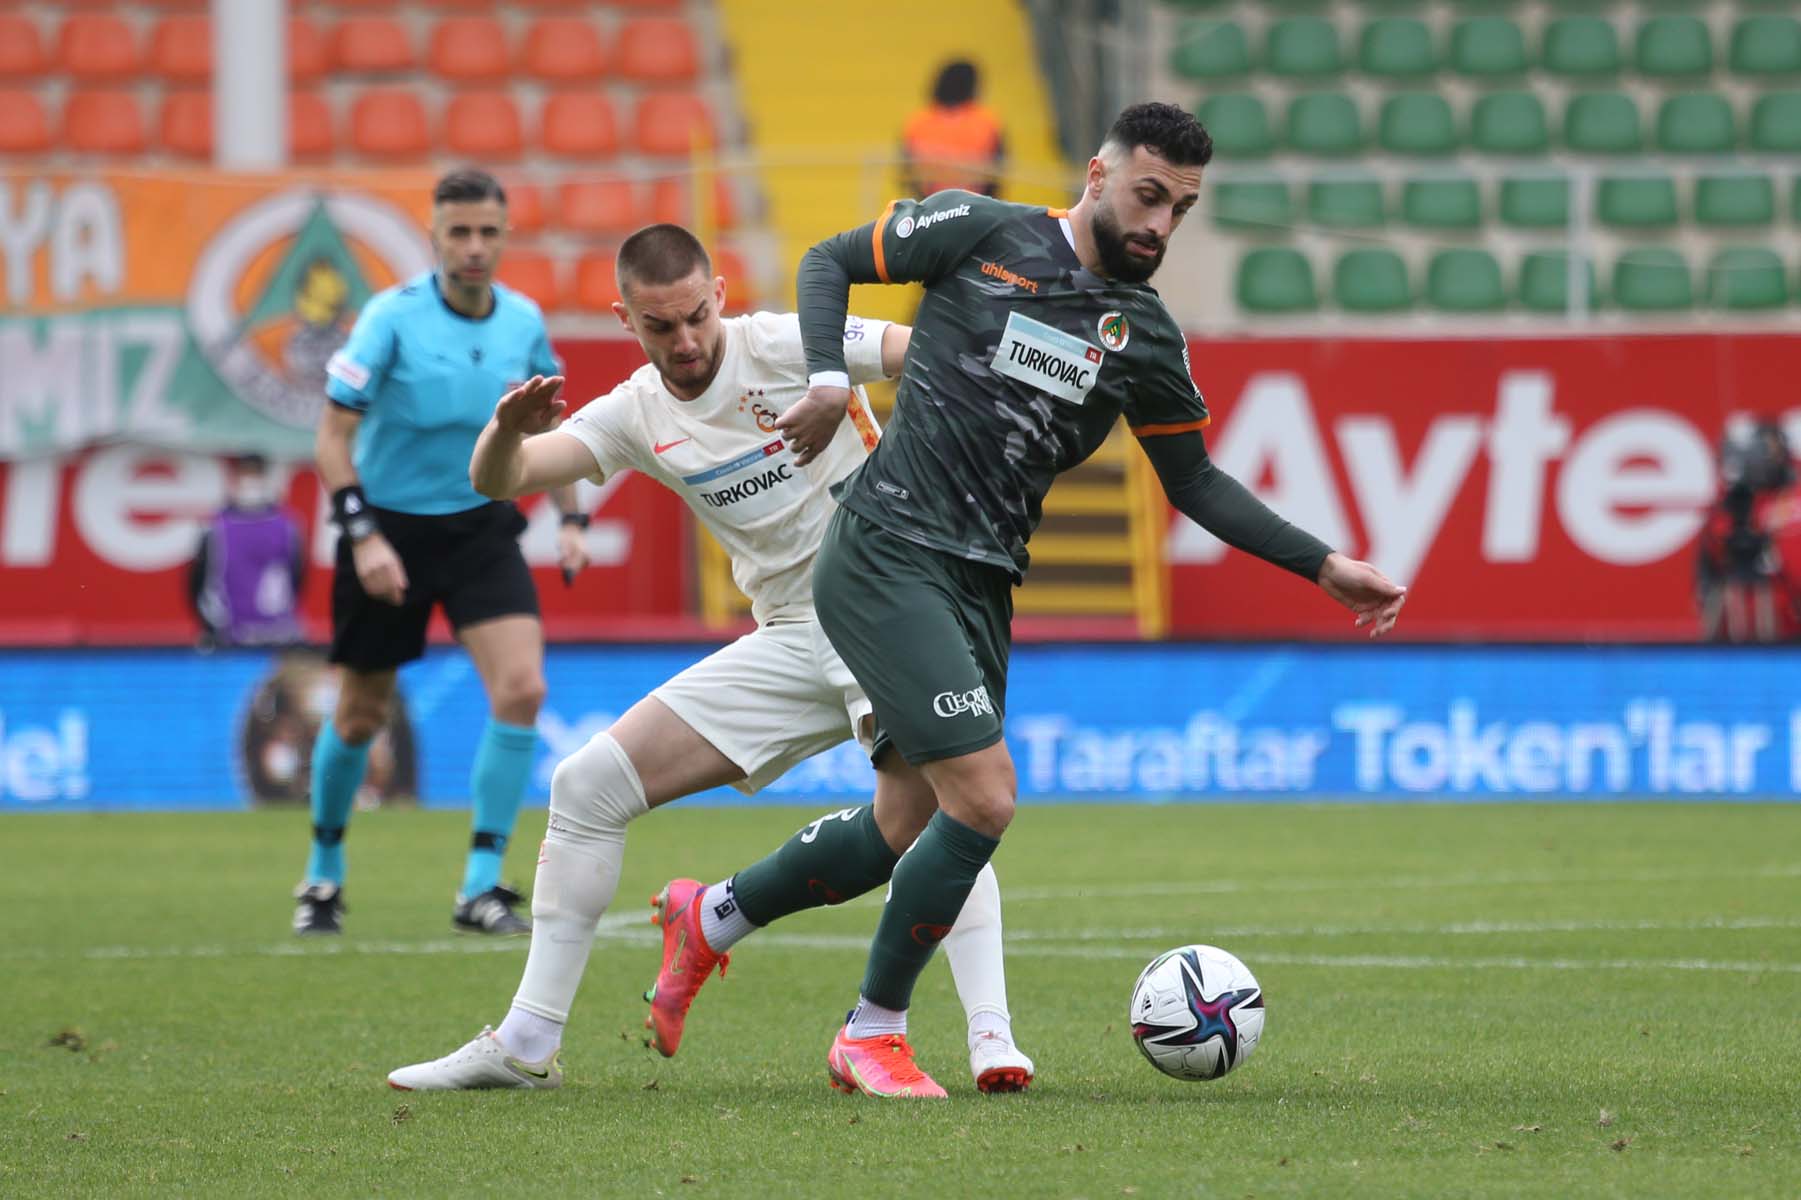 Son Dakika | Aytemiz Alanyaspor 1 – 1 Galatasaray |Maç sonucu, özeti 